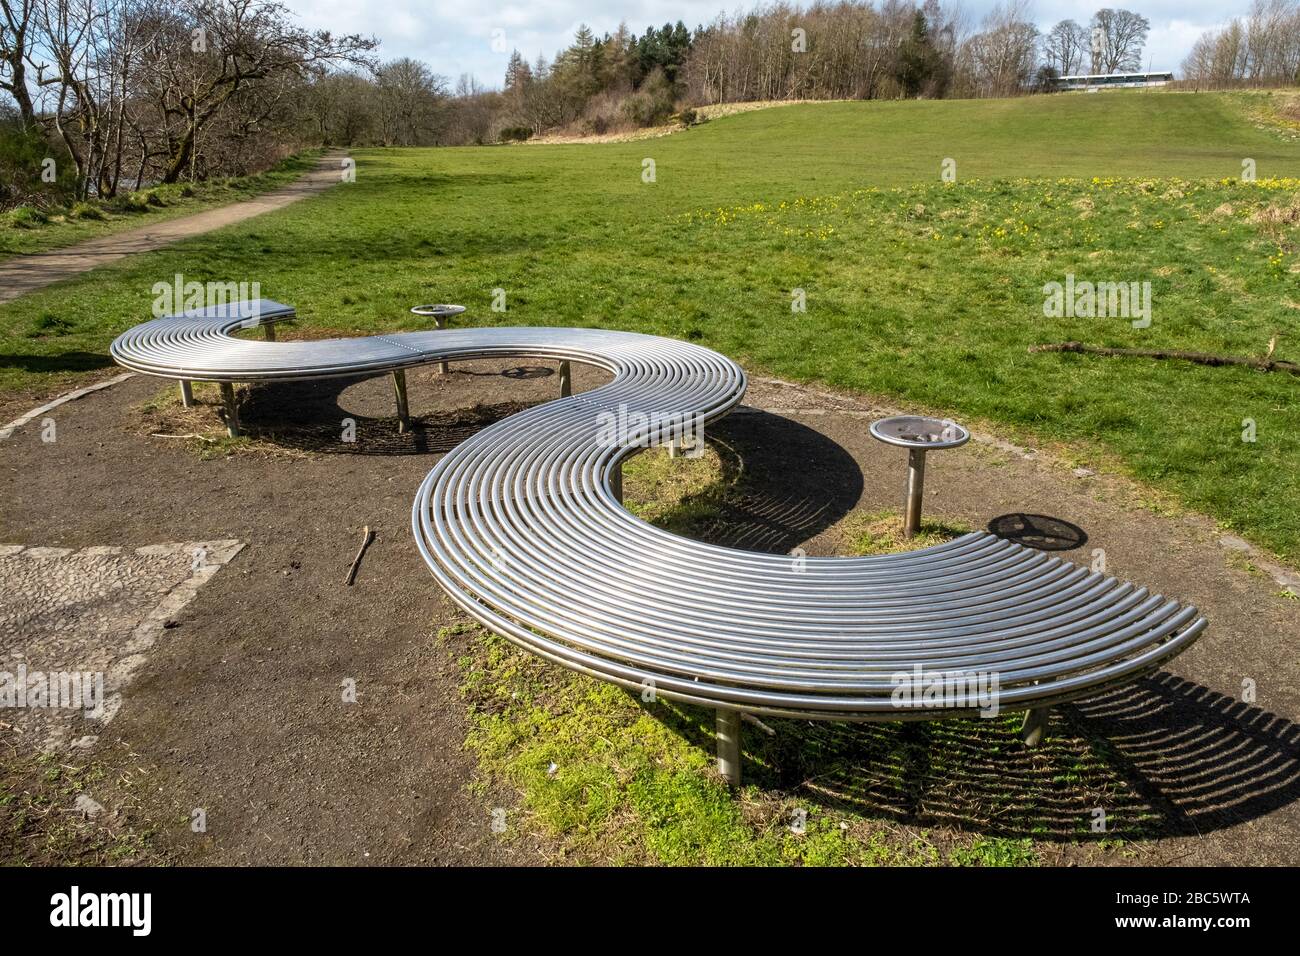 Posti a sedere in un parco in metallo dal design moderno, sul percorso lungo il fiume Almond Park, Livingston, West Lothian. Foto Stock